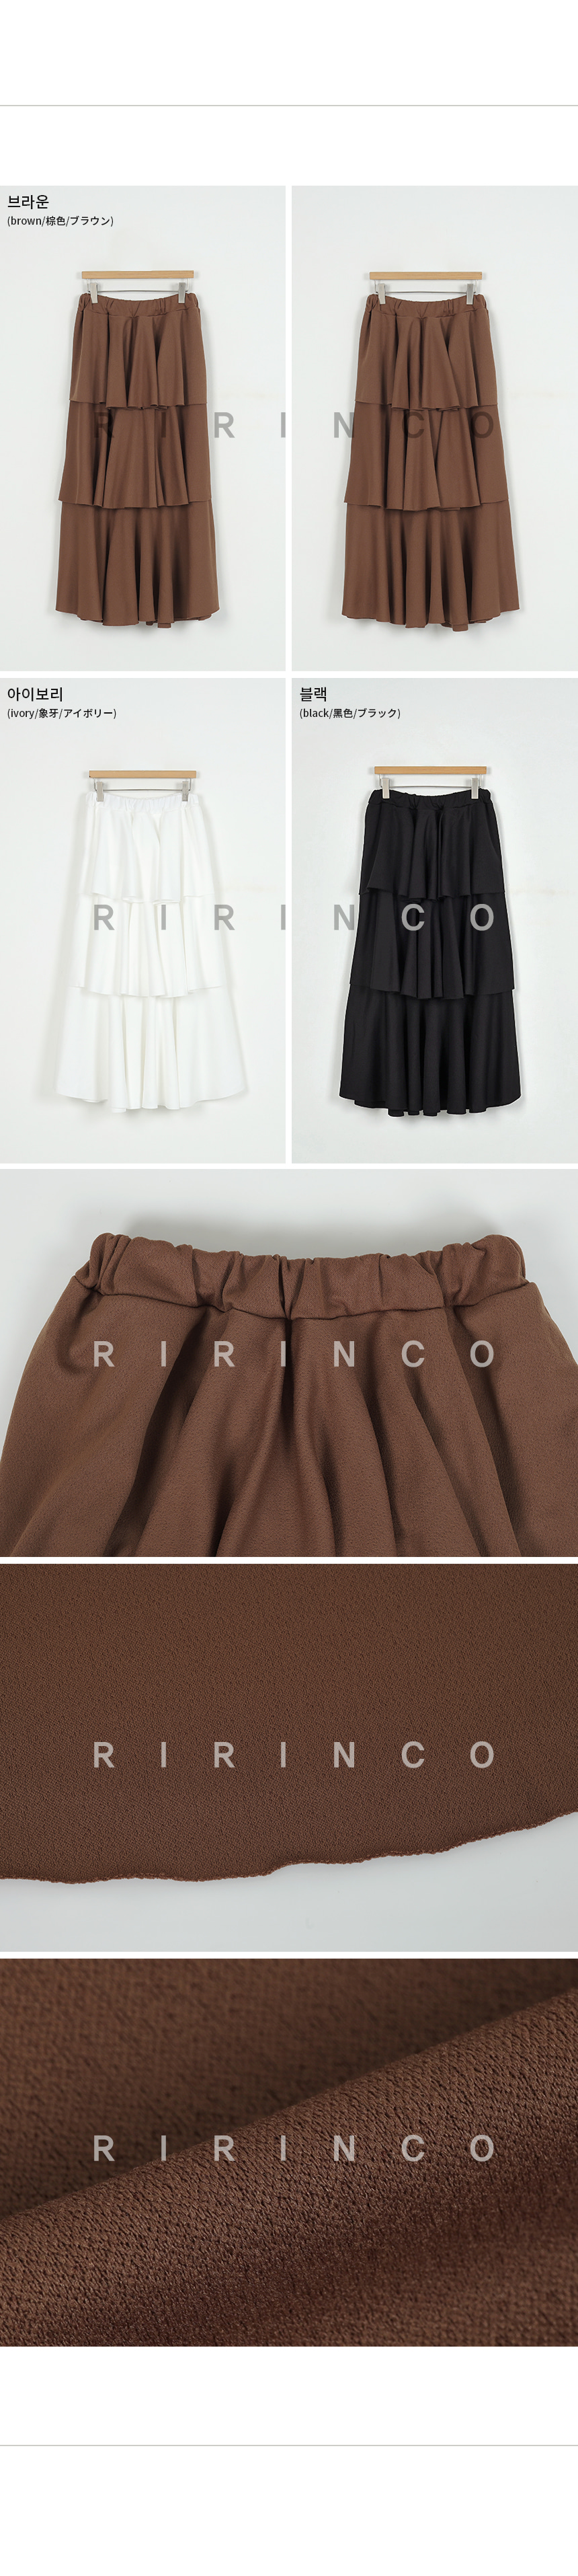 RIRINCO ウエストゴム 3段ティアードロングスカート